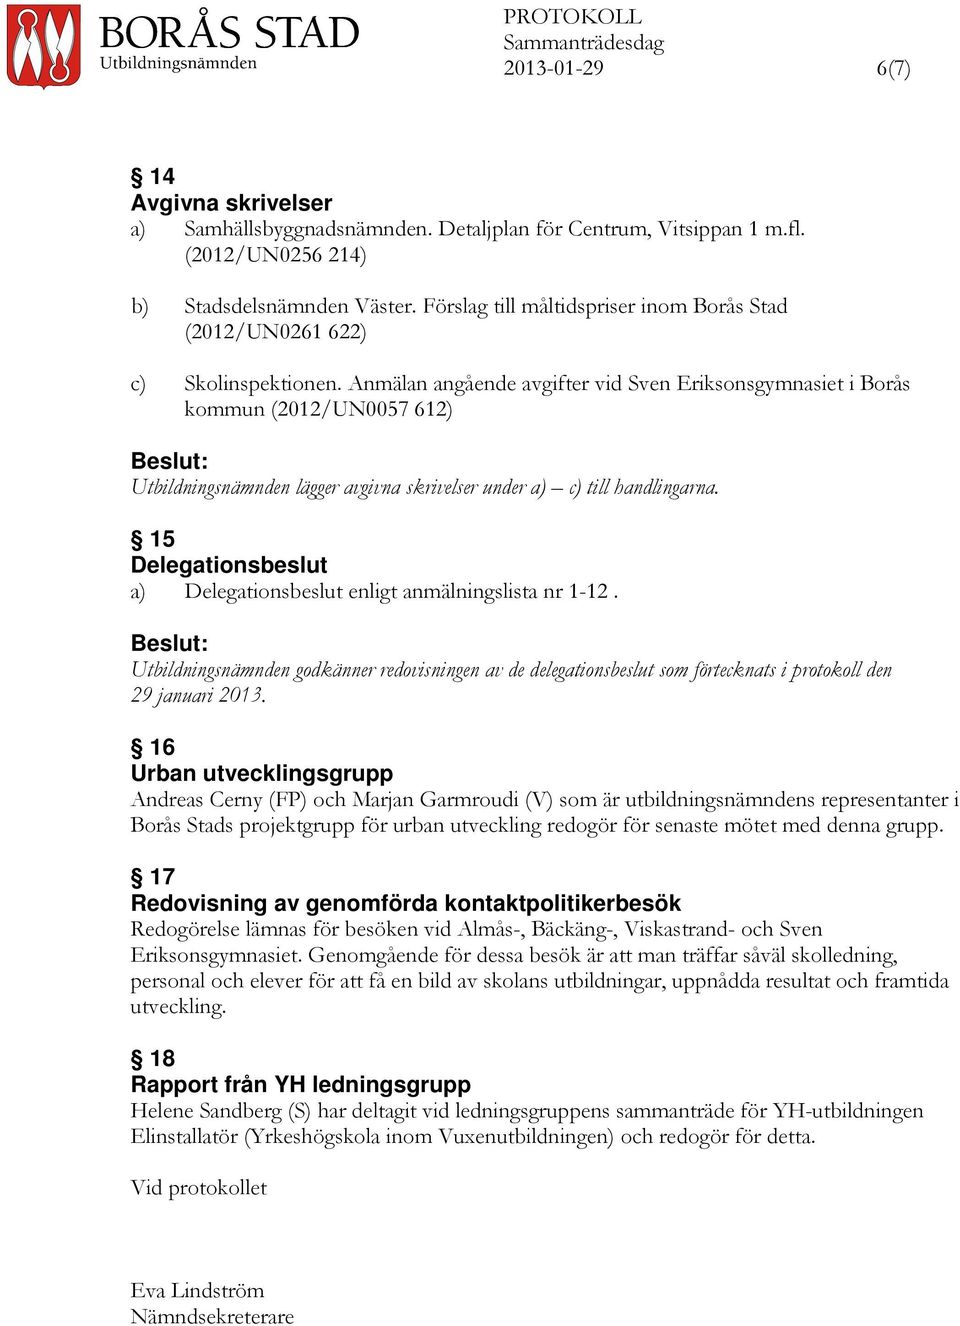 Anmälan angående avgifter vid Sven Eriksonsgymnasiet i Borås kommun (2012/UN0057 612) Utbildningsnämnden lägger avgivna skrivelser under a) c) till handlingarna.